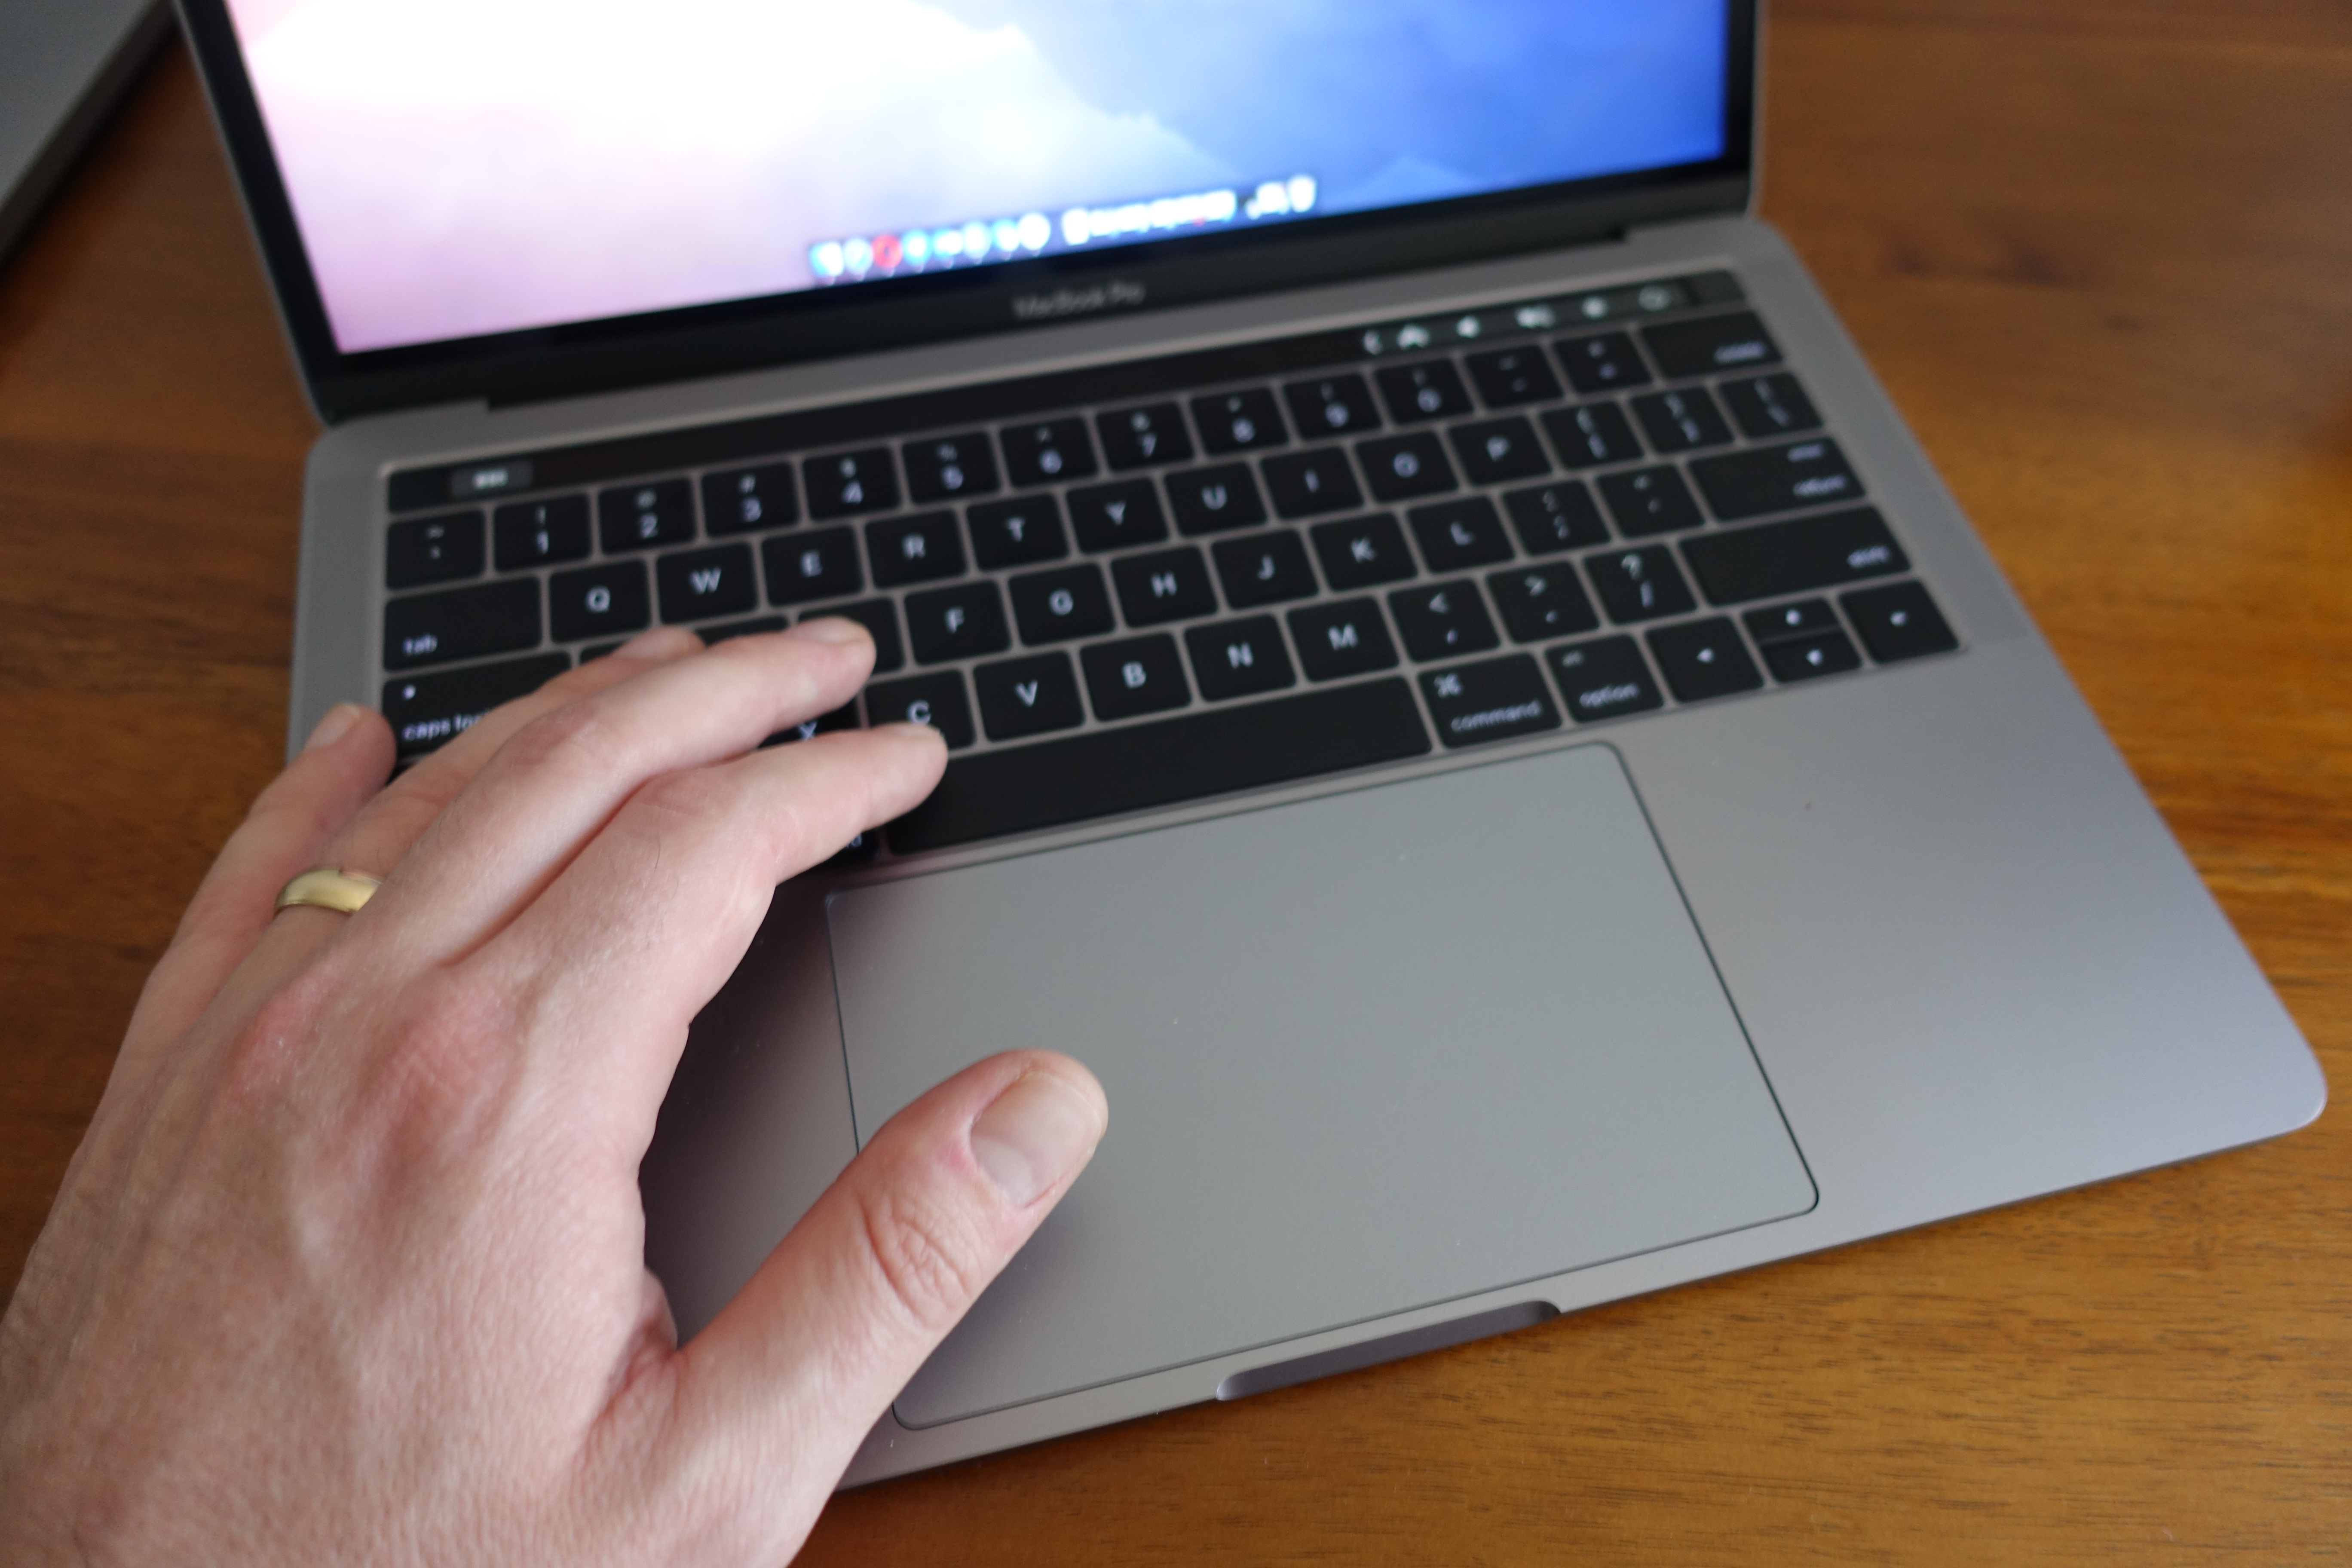 For første gang blir ikke en MacBook Pro anbefalt av Consumer Reports.